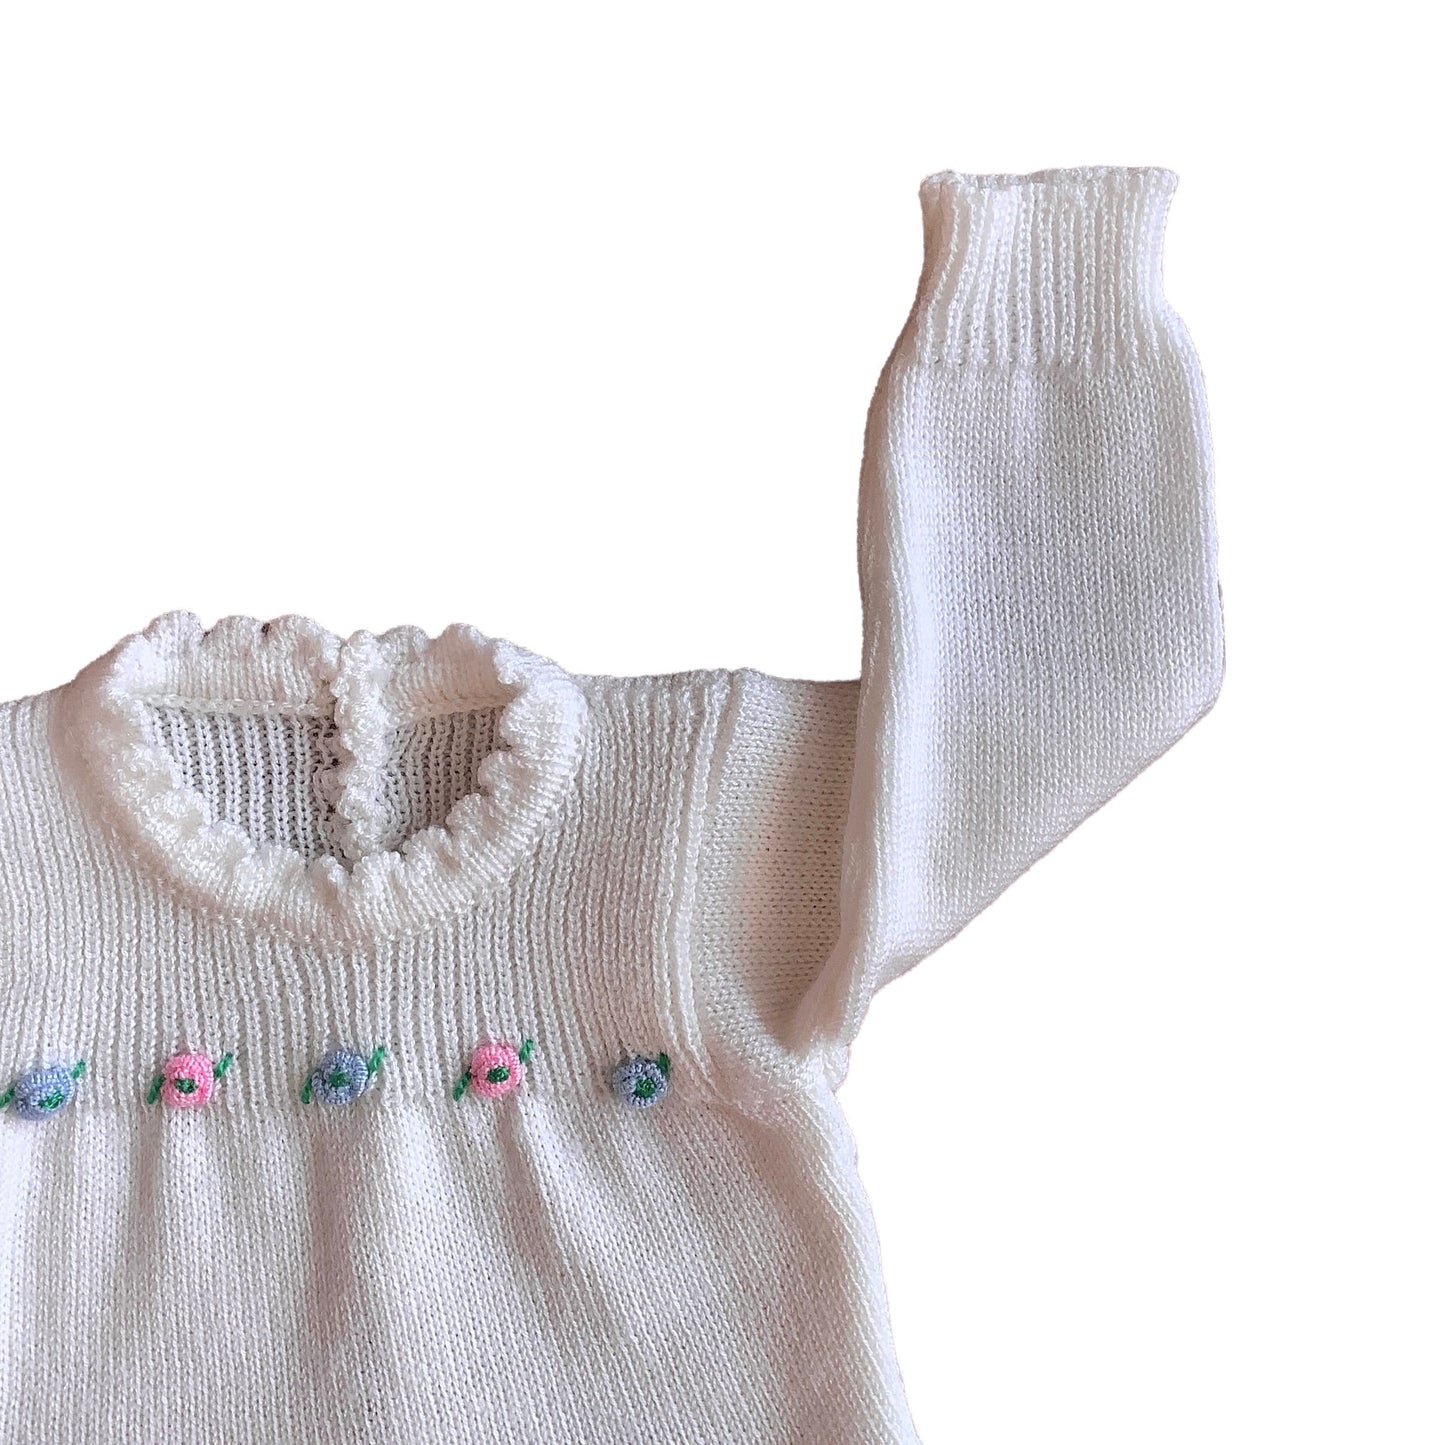 Vintage 70's White Knitted Jumper Newborn / 0-3 Months